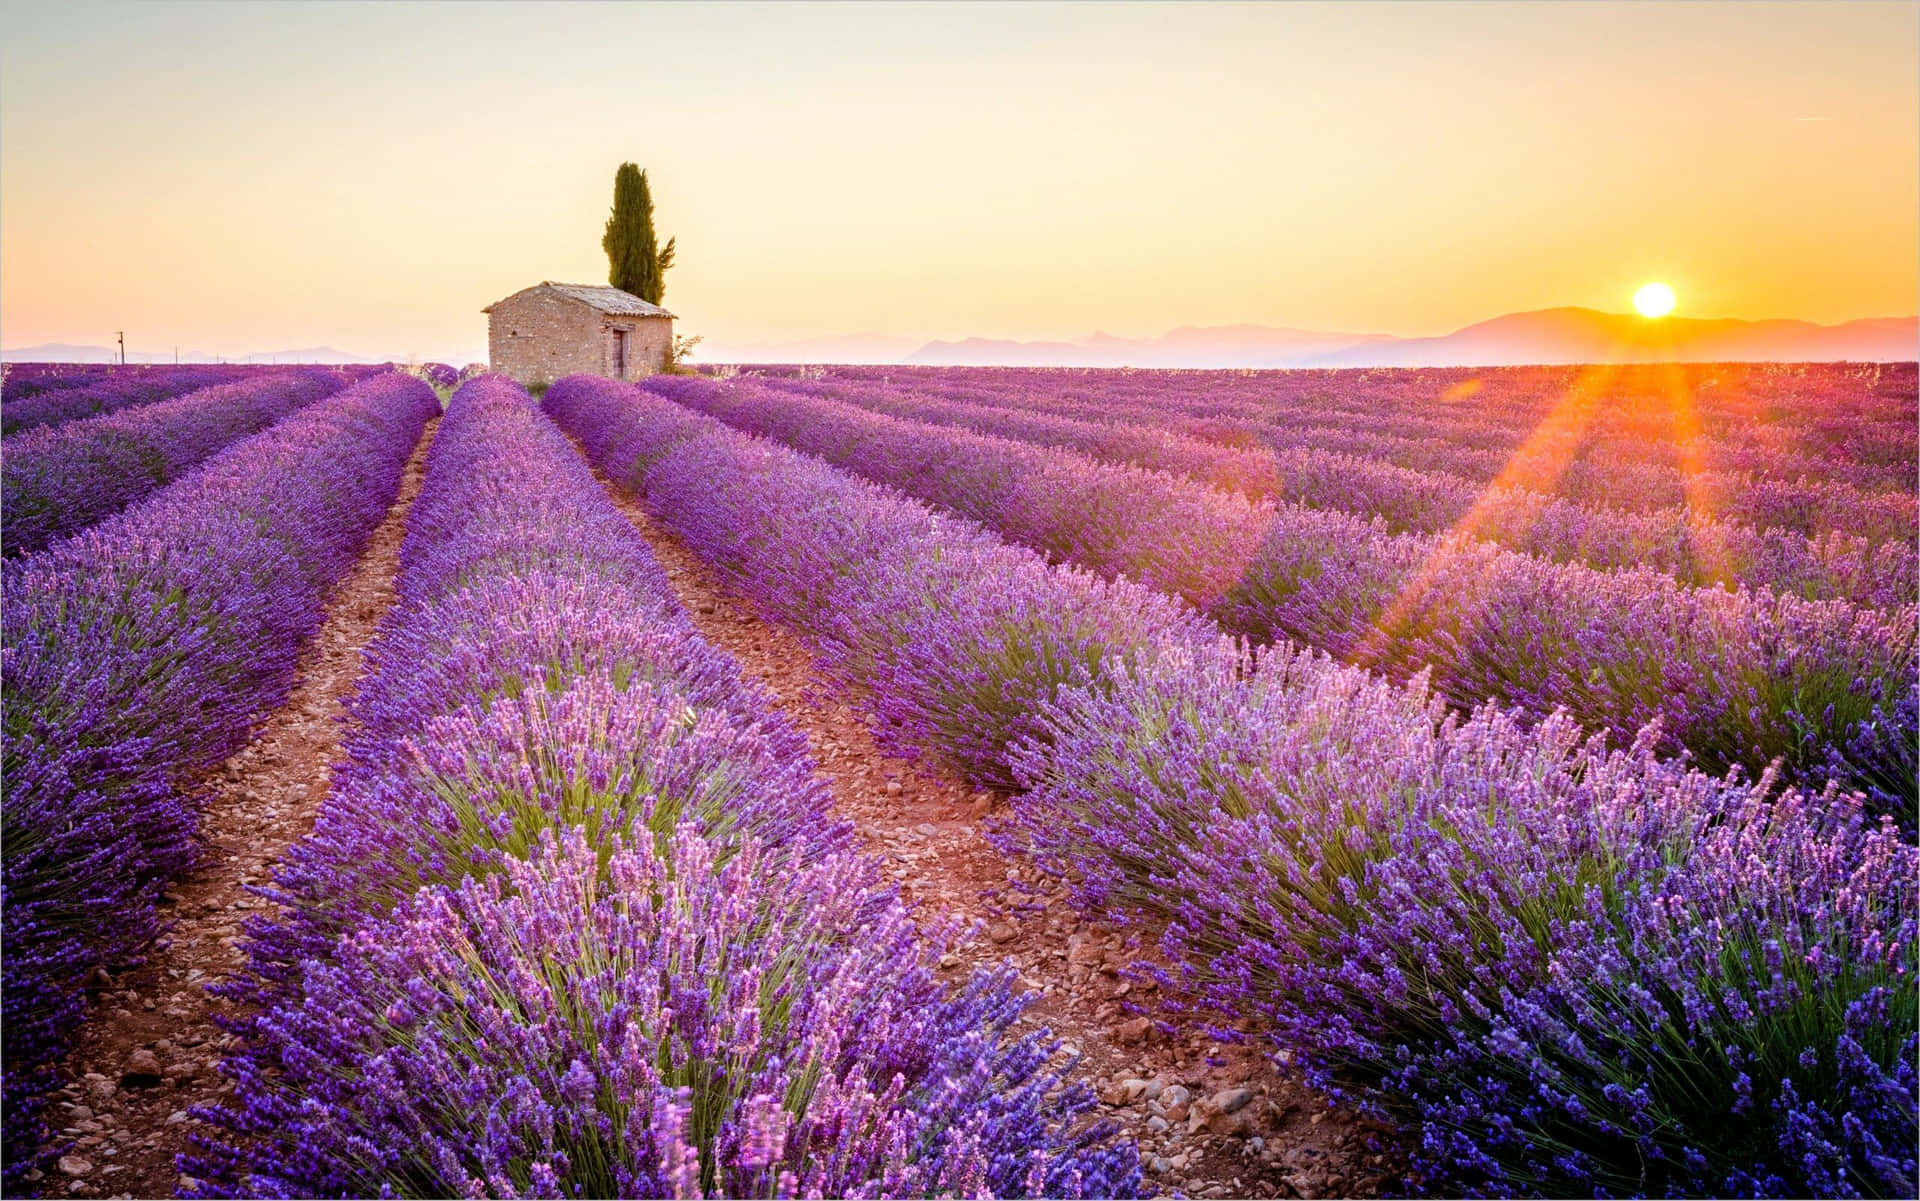 Rollendelavendelfelder In Der Provence - Ein Anblick Von Schönheit Für Alle Wallpaper